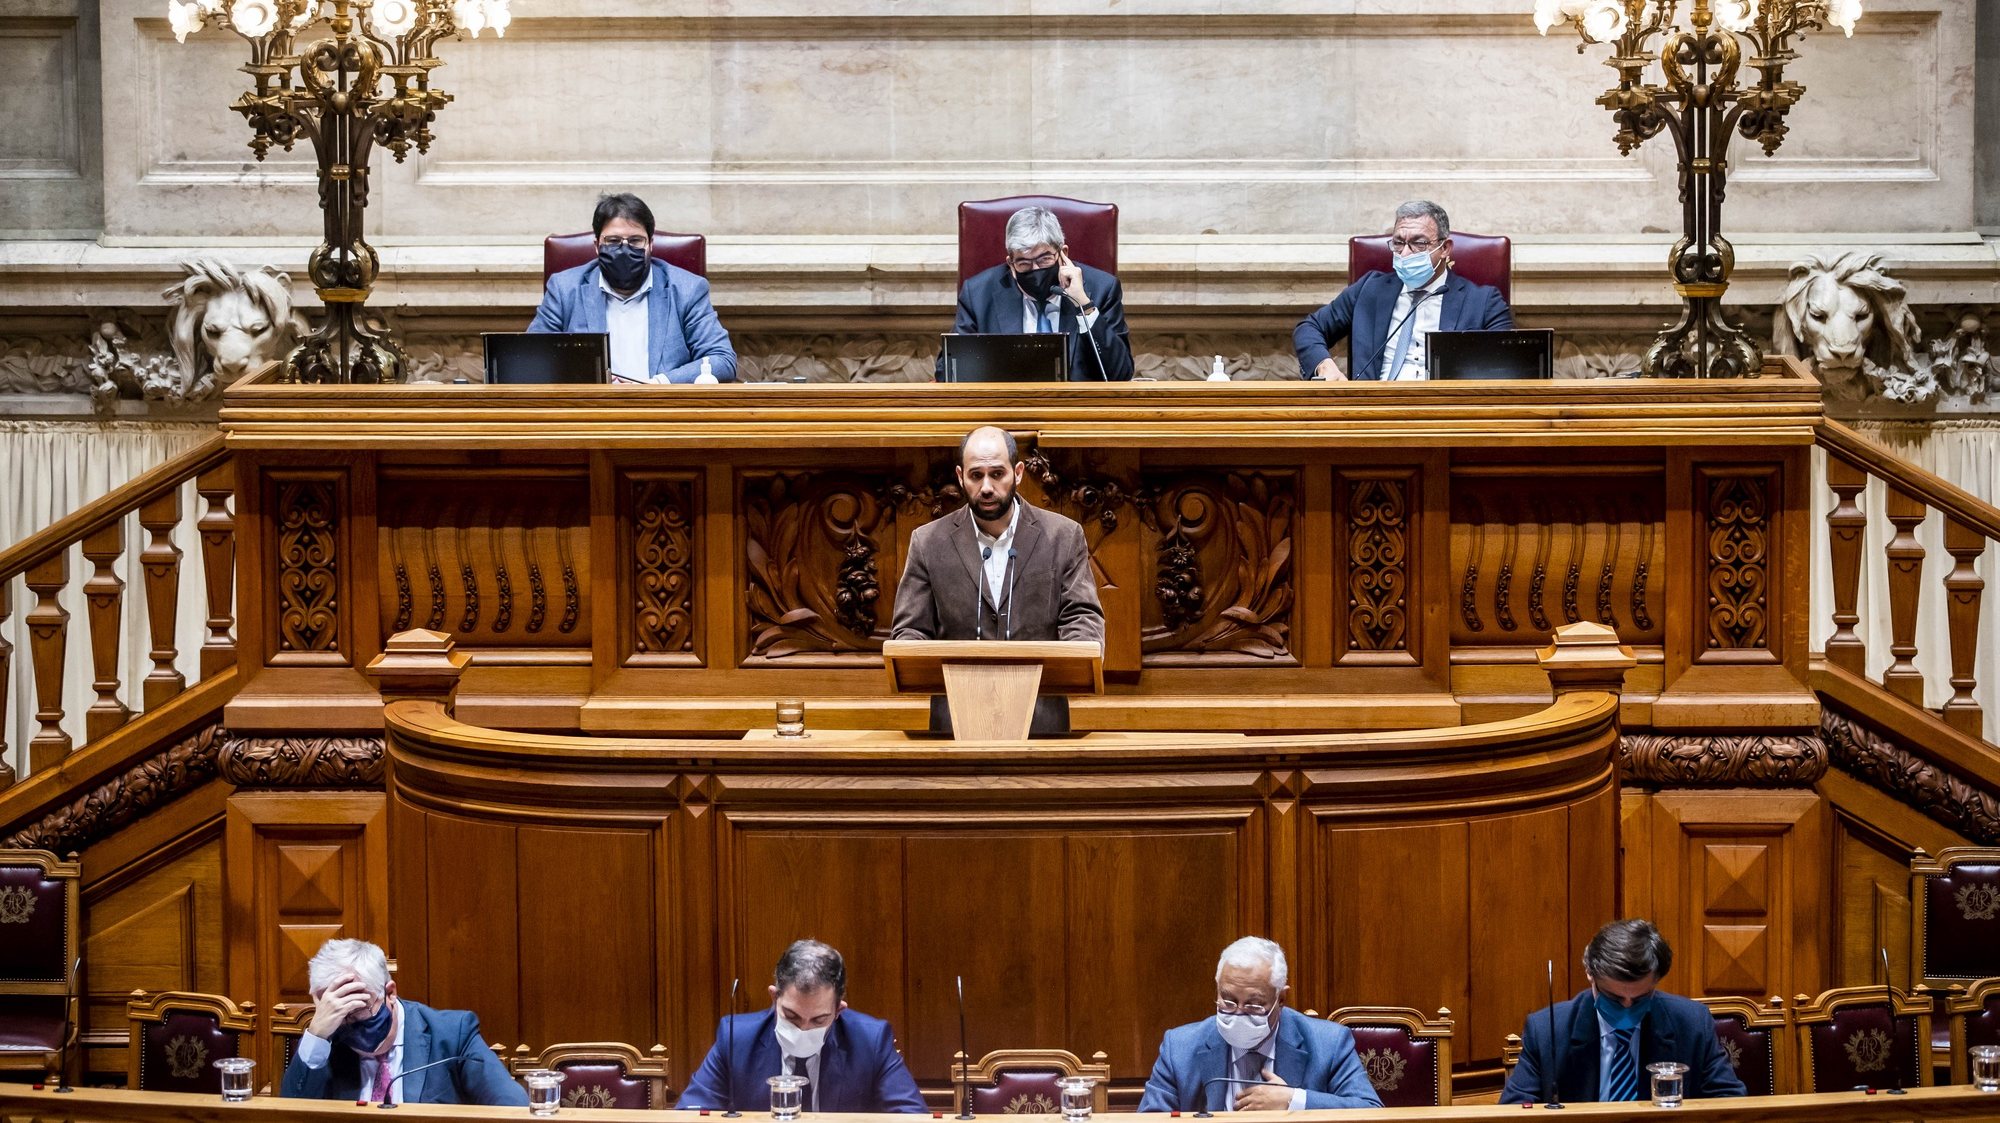 O líder parlamentar do Bloco de Esquerda (BE), Pedro Filipe Soares, intervém durante o debate sobre o pedido de renovação do estado de emergência, na Assembleia da República, em Lisboa, 04 de dezembro de 2020. JOSÉ SENA GOULÃO/LUSA